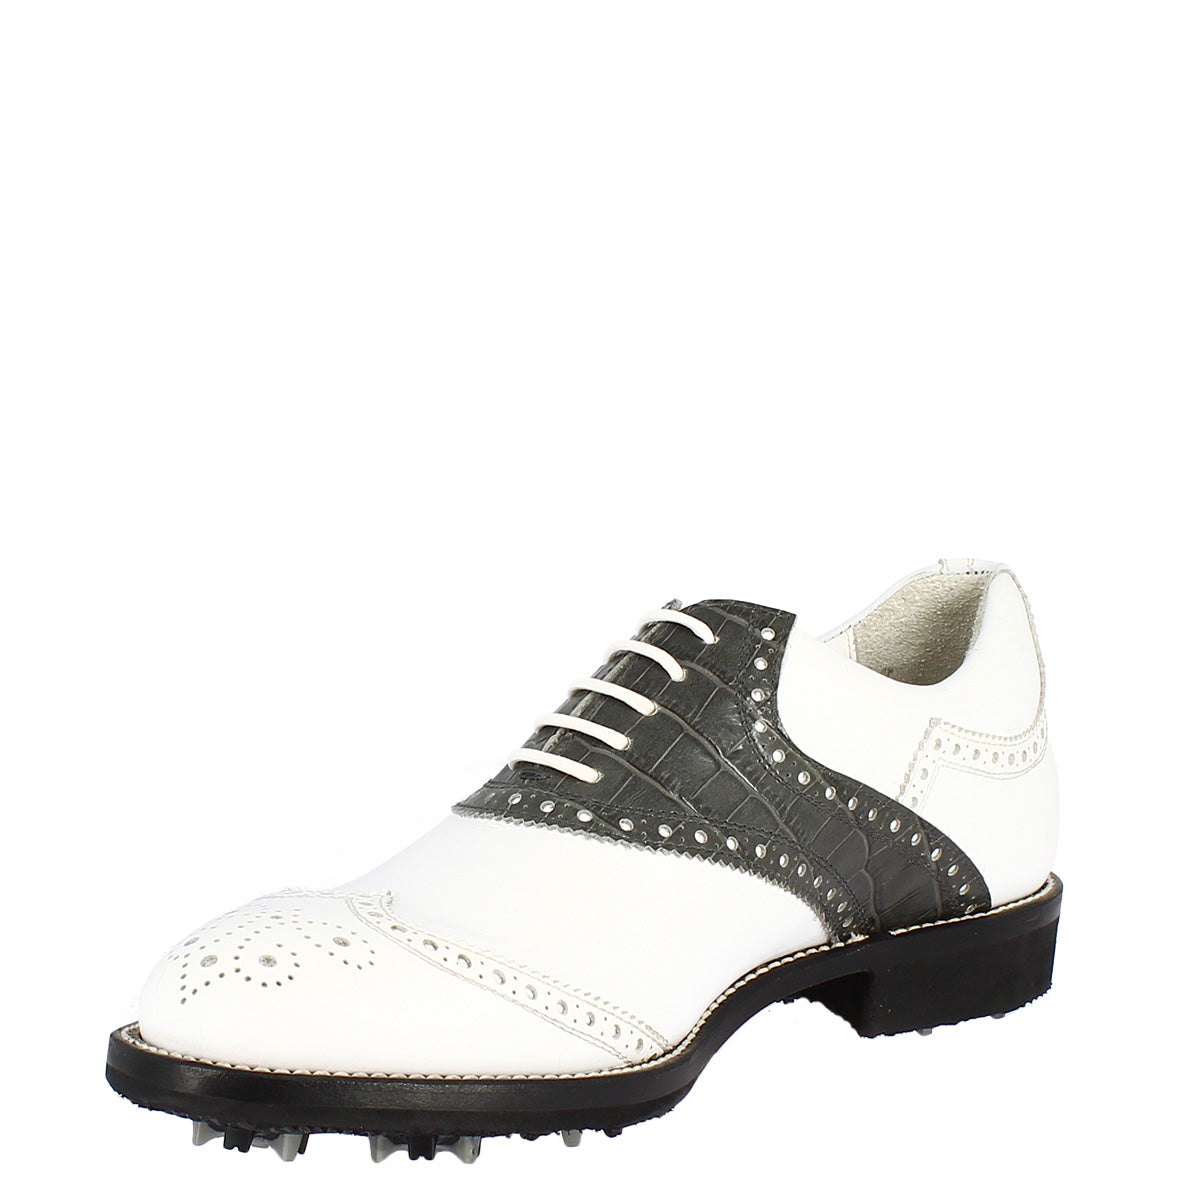 Handgefertigte klassische Damen-Golfschuhe aus weiß-grauem Leder